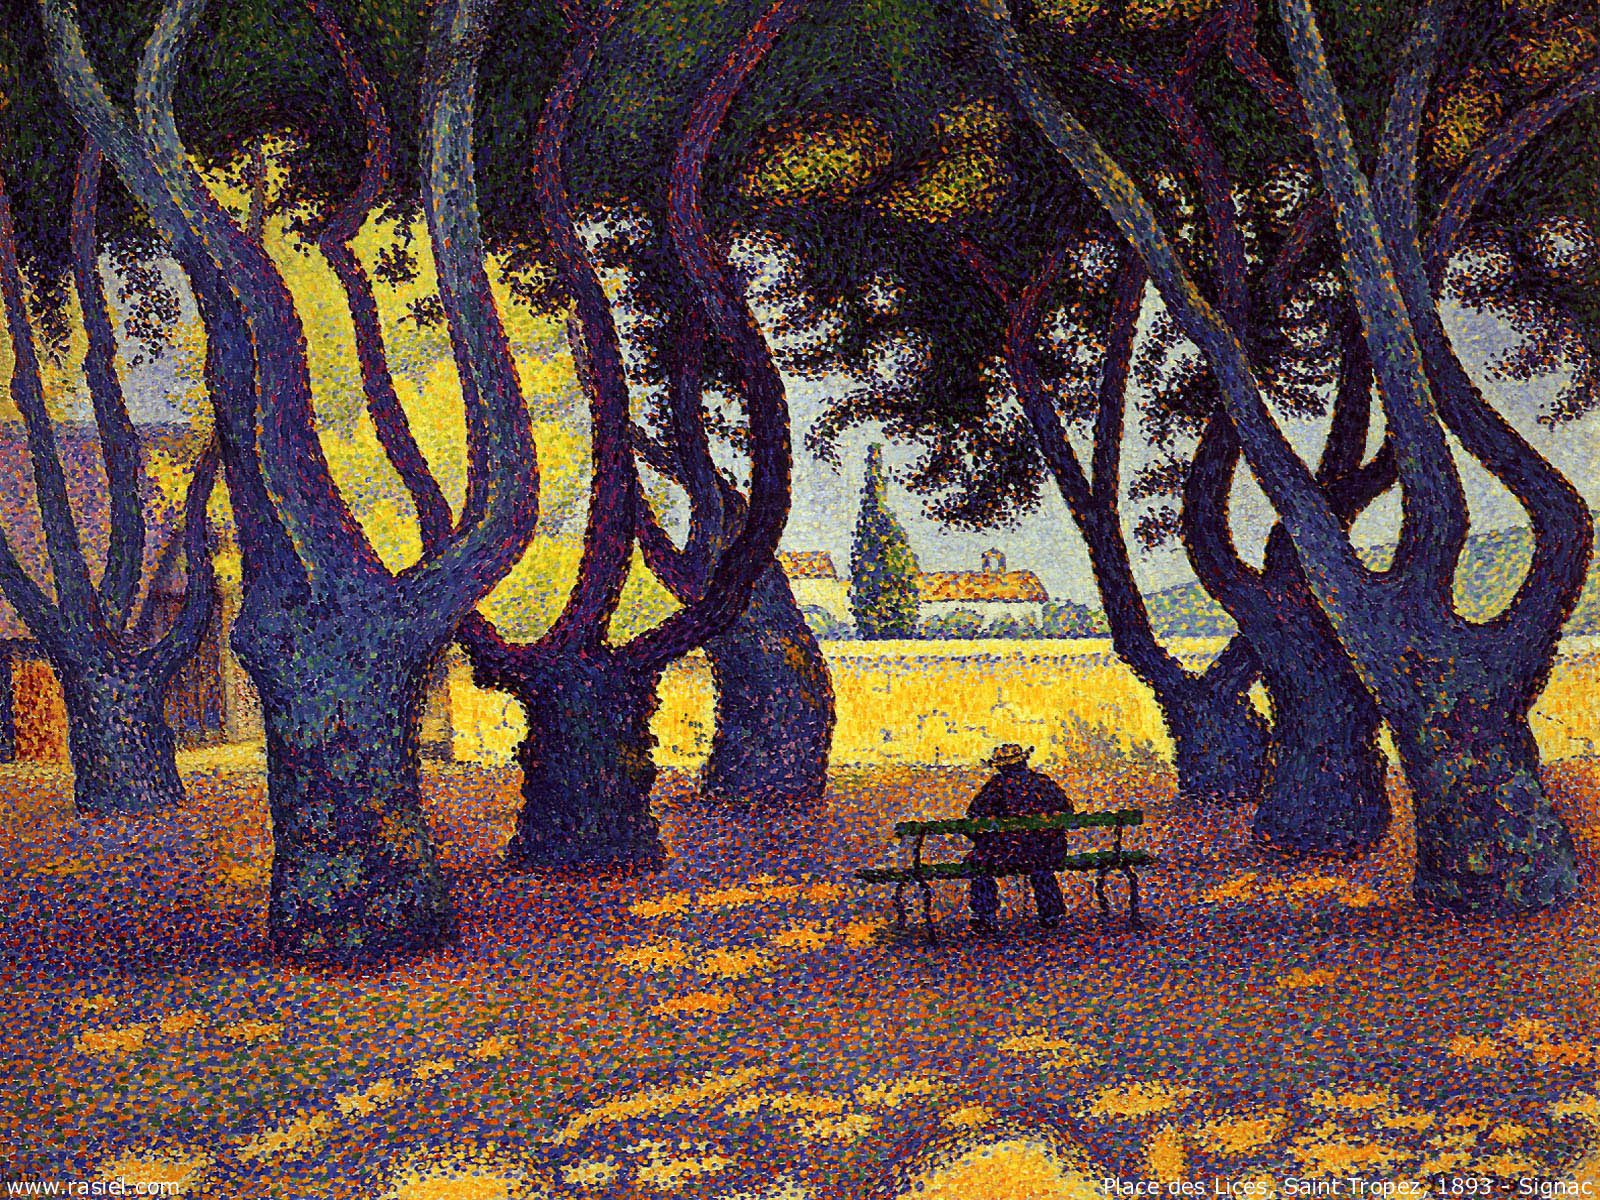 Художник Поль Синьяк Signac картина Place des Lice Сен Тропе пейзажи природы Альберт Сафиуллин